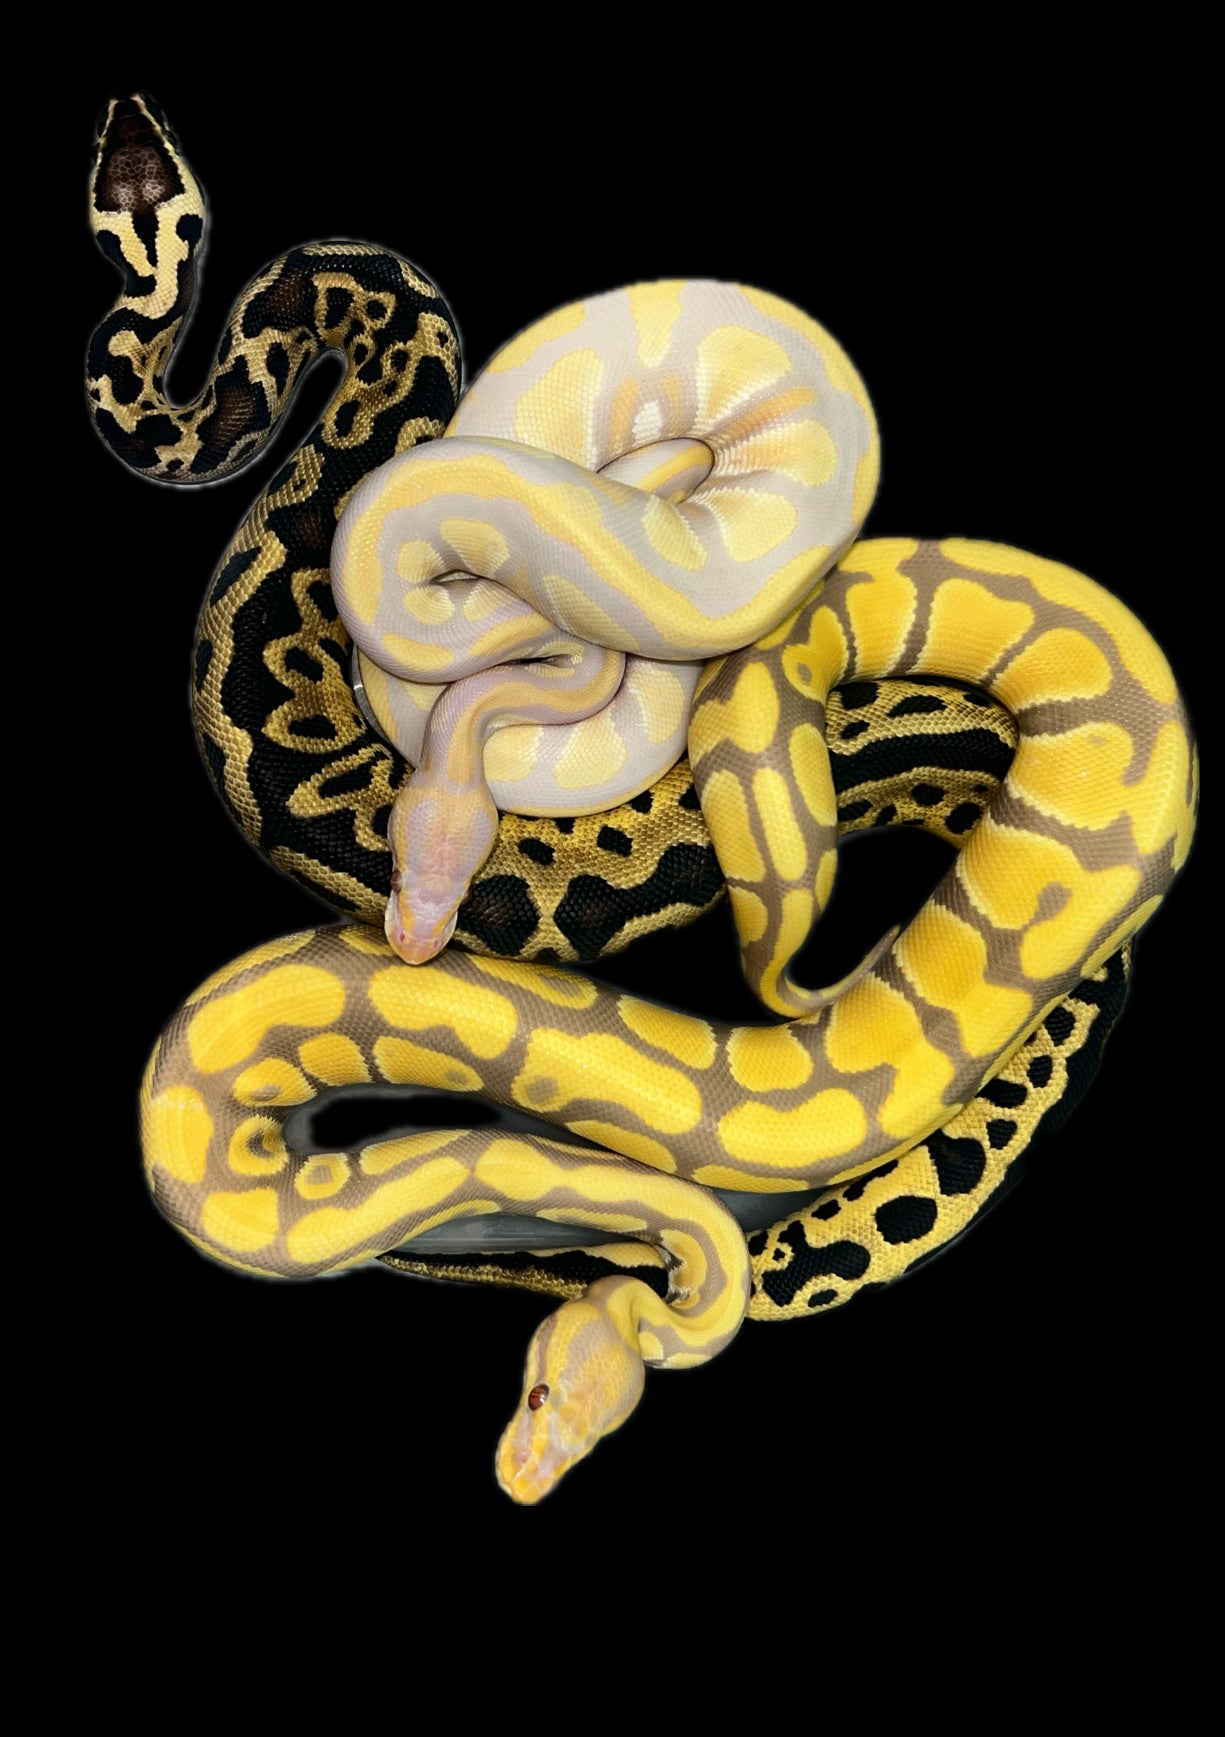 ball python snakes 